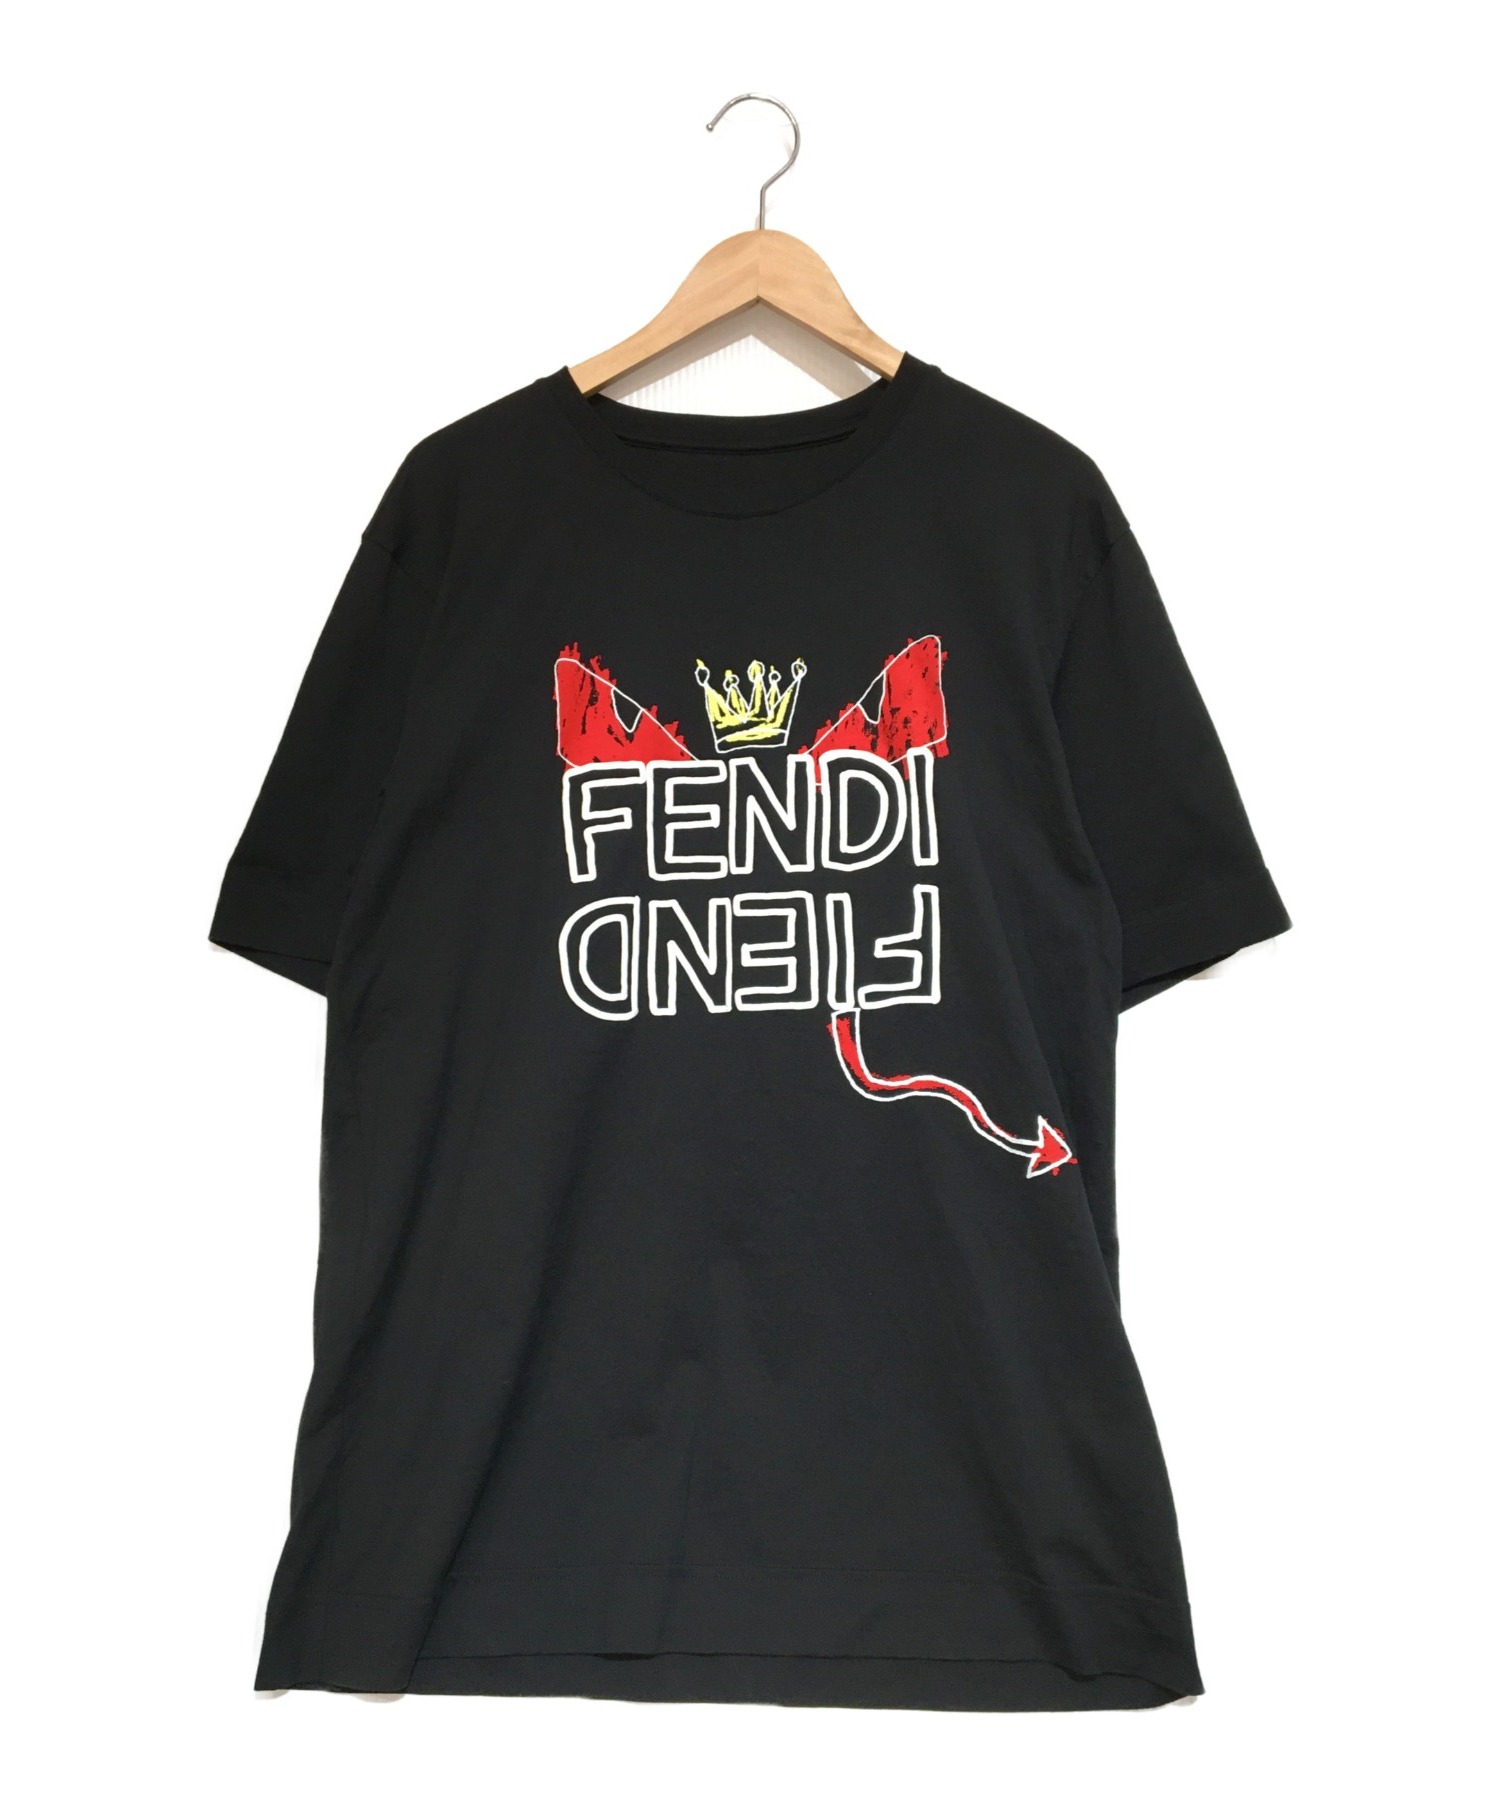 FENDI フェンディ Tシャツ ブラック 黒 モンスター ロゴ M - トップス